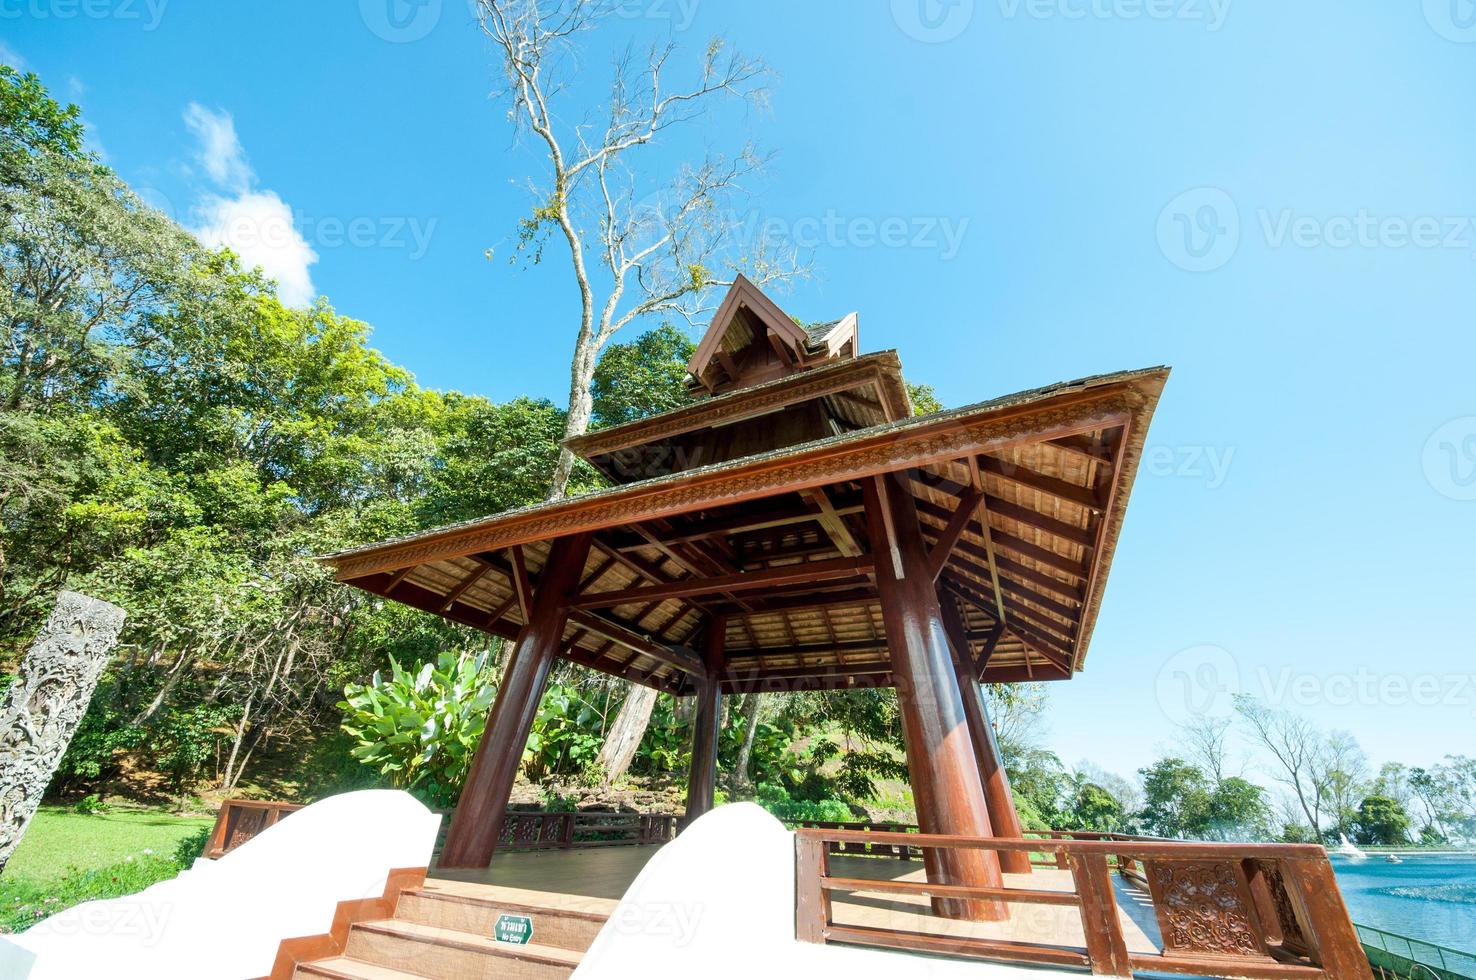 pavillon thaï dans un parc photo